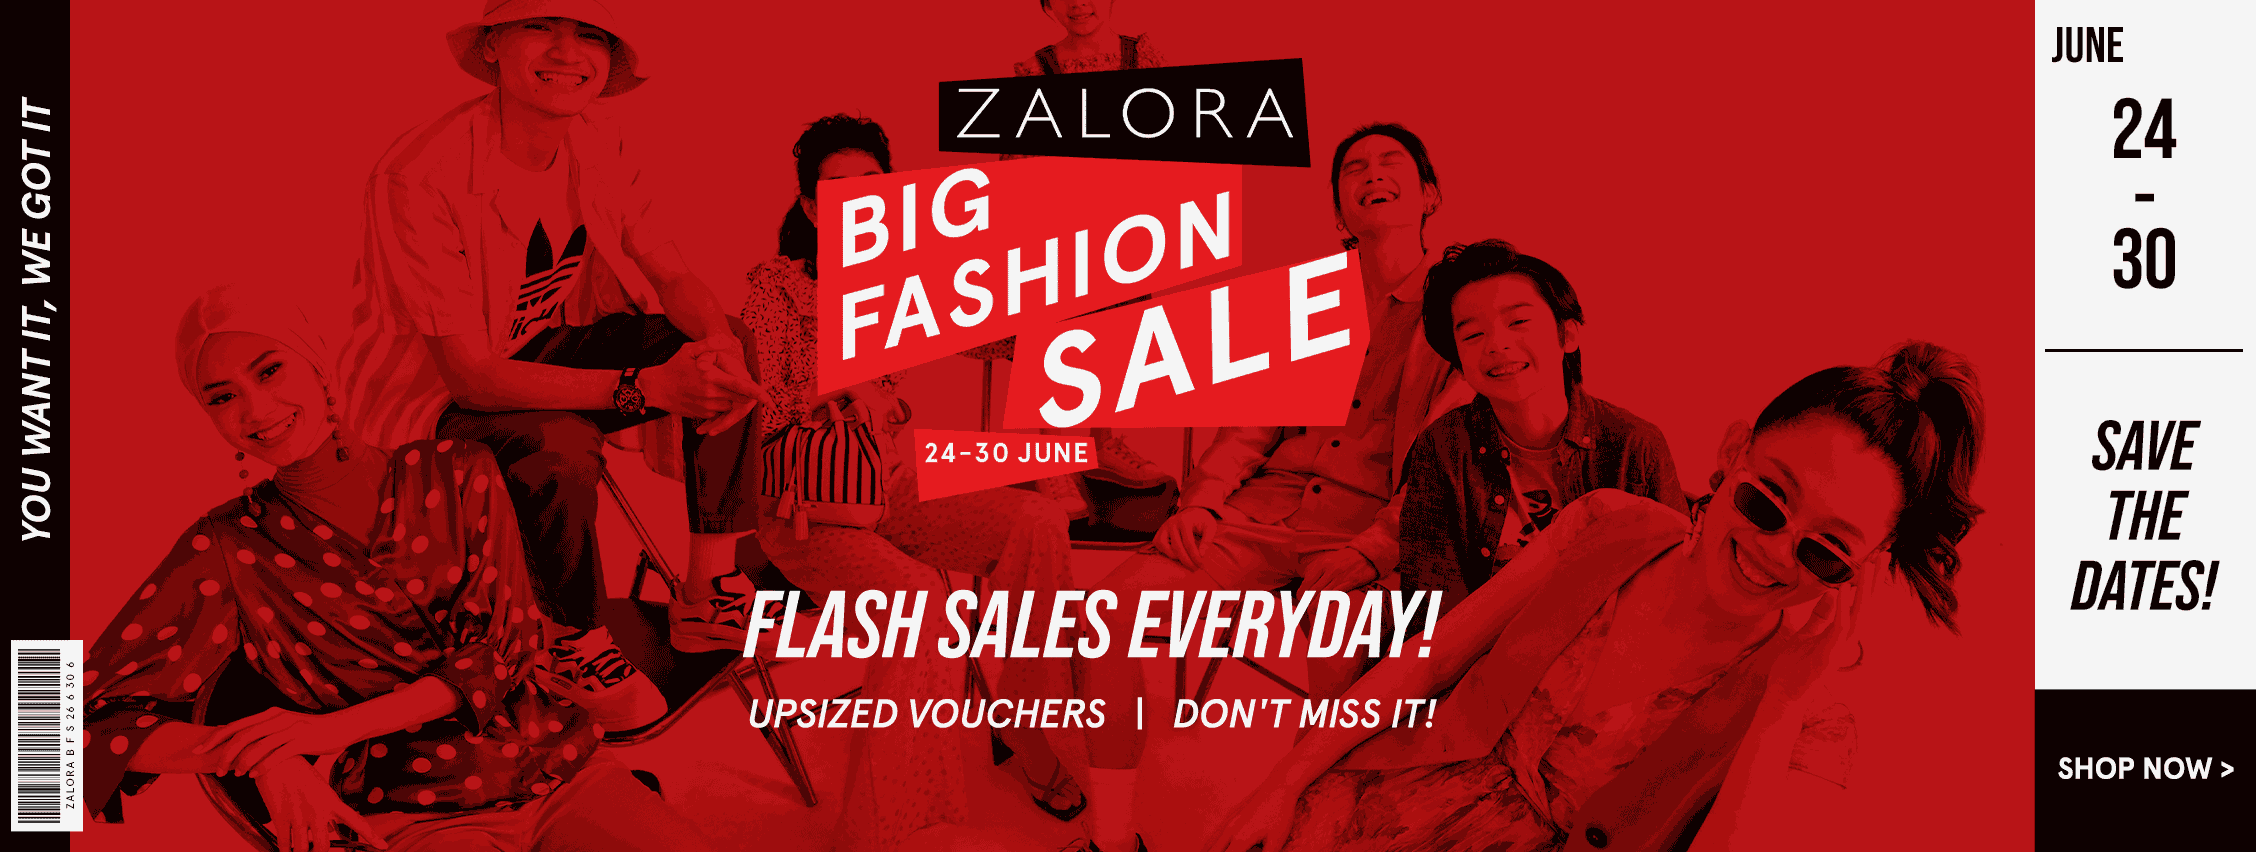 Zalora Big Fashion Sale Online Zalora Malaysia Brunei